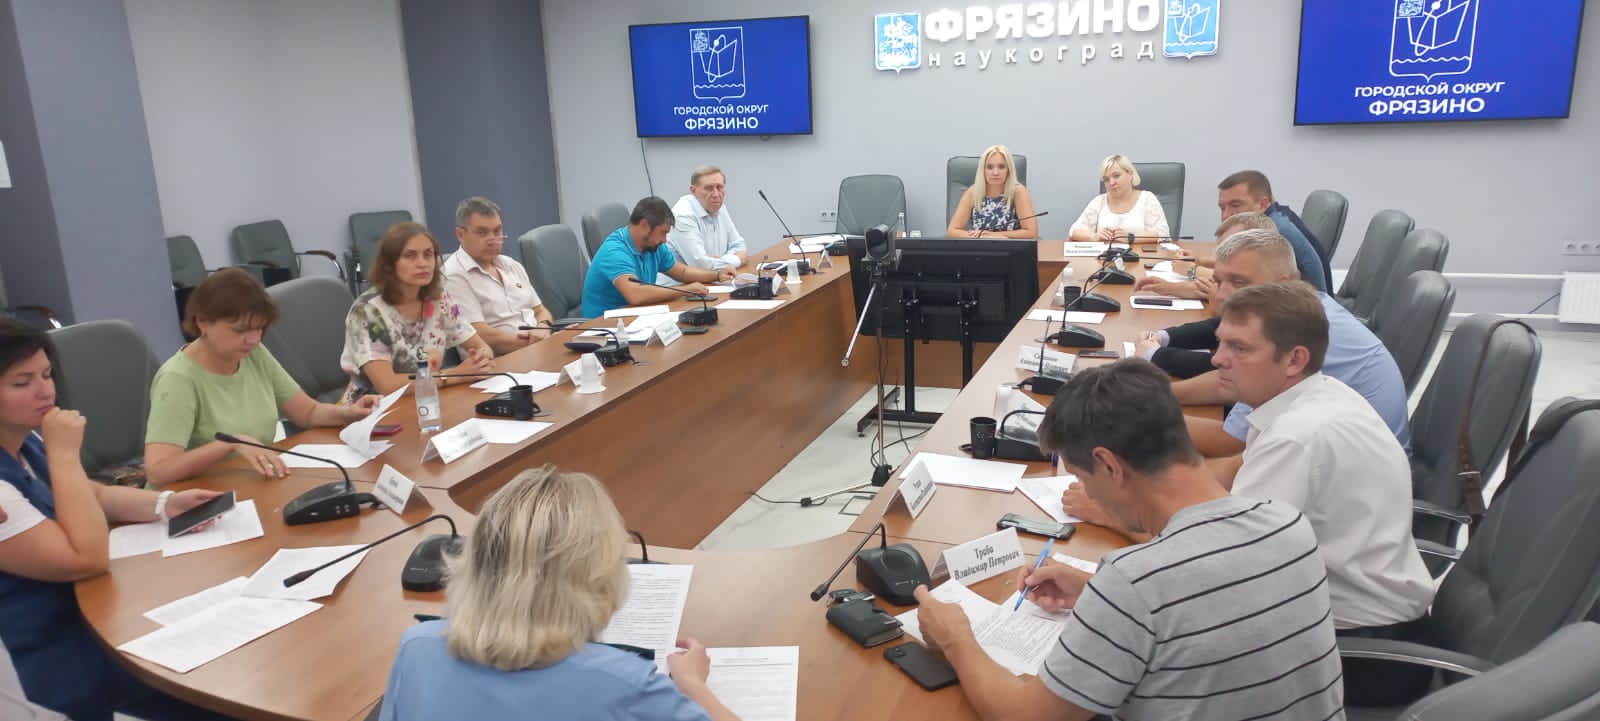 5 августа 2022 года председатель Контрольно-счетной палаты городского округа Фрязино Панченко Л.А. приняла участие в заседании Совета депутатов